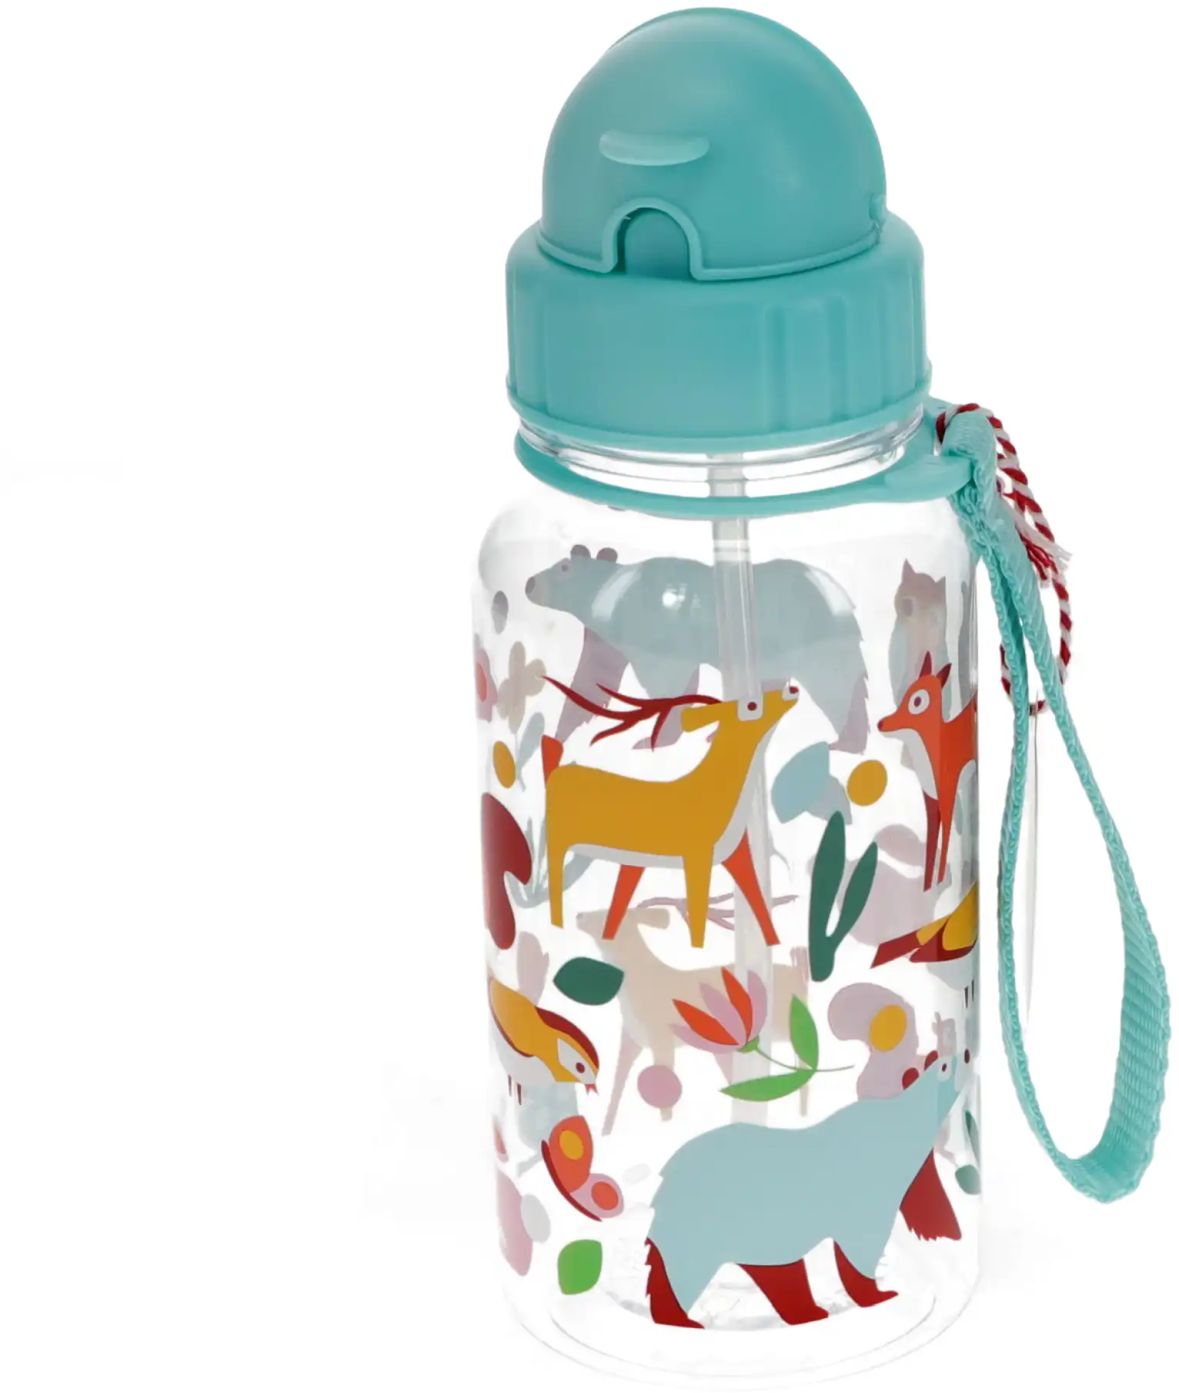 Levně Rex London Children's water bottle with straw 500ml – Woodland